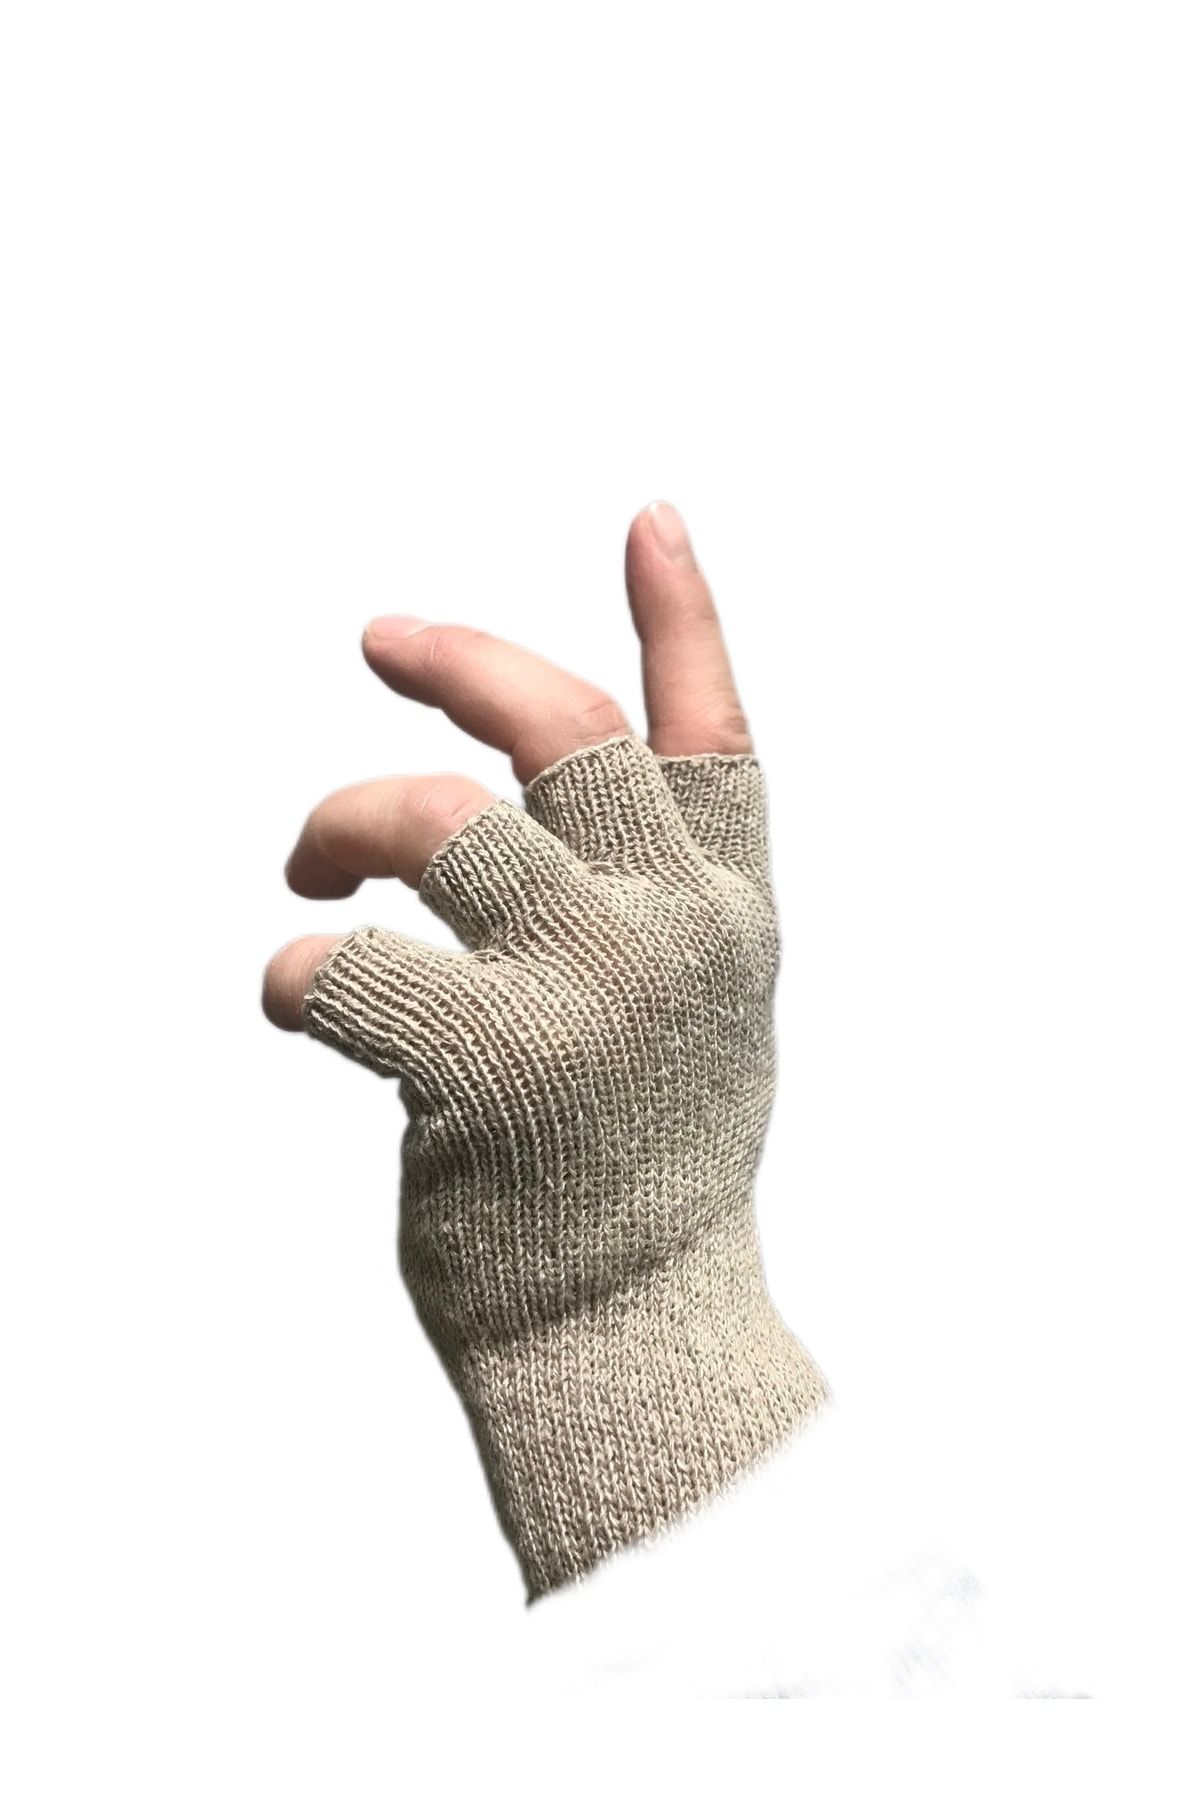 BTL STORE Cut Finger Gloves Men's Women's Fingerless Gloves - Mink